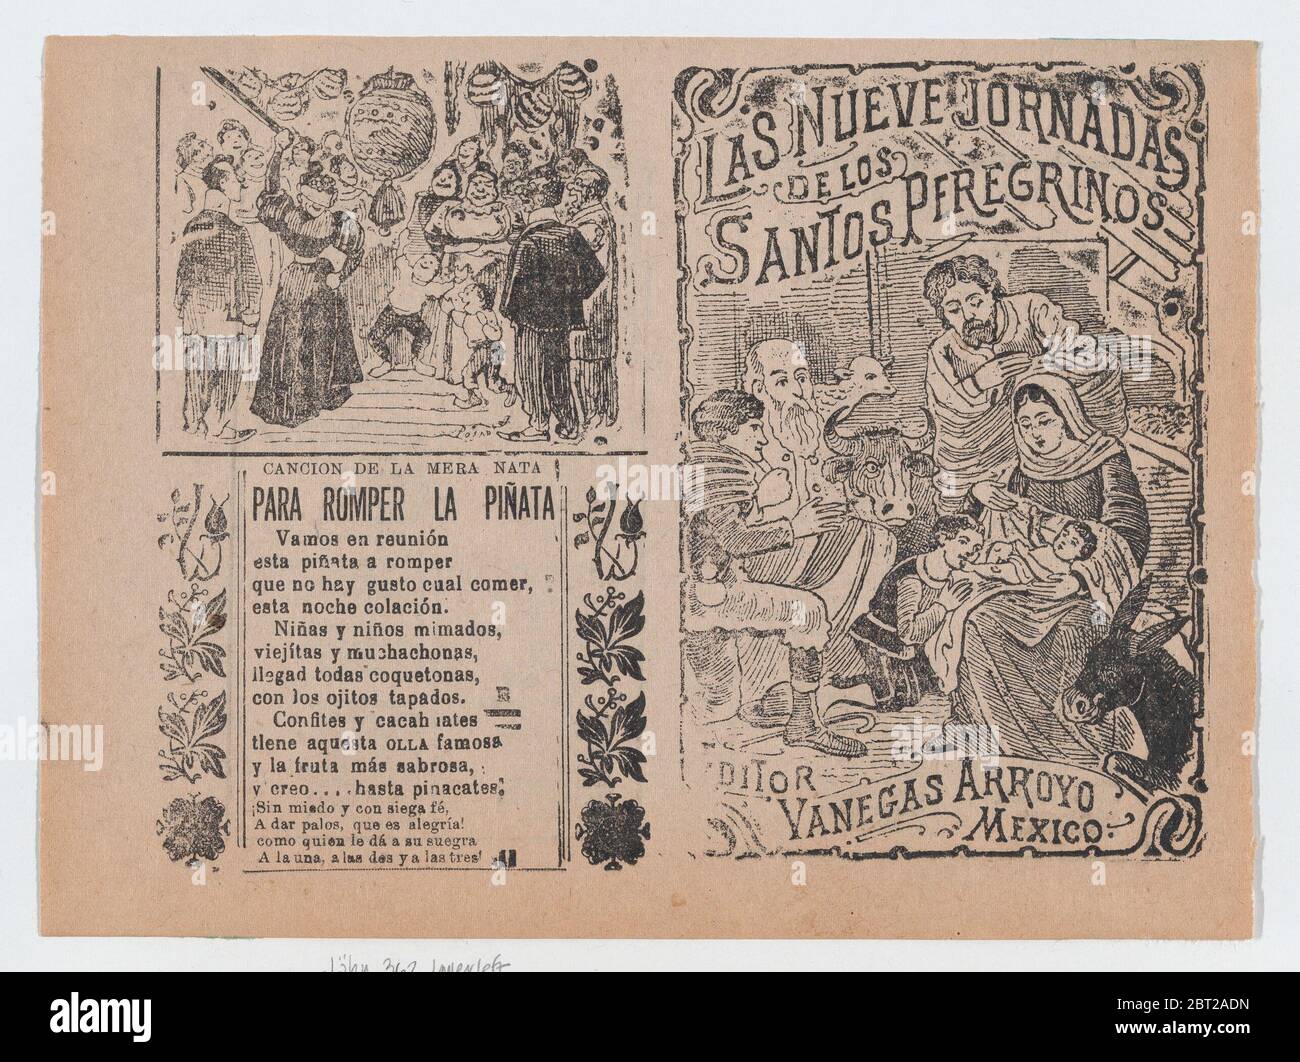 Deux annonces imprimées sur la même feuille pour les documents publiés par Vanegas Arroyo, l'une à gauche a des versets à accompagner la rupture d'un pi&#xf1;ata et à droite, concernant les pèlerins religieux avec une image de la Nativité, ca. 1900-1910. Banque D'Images